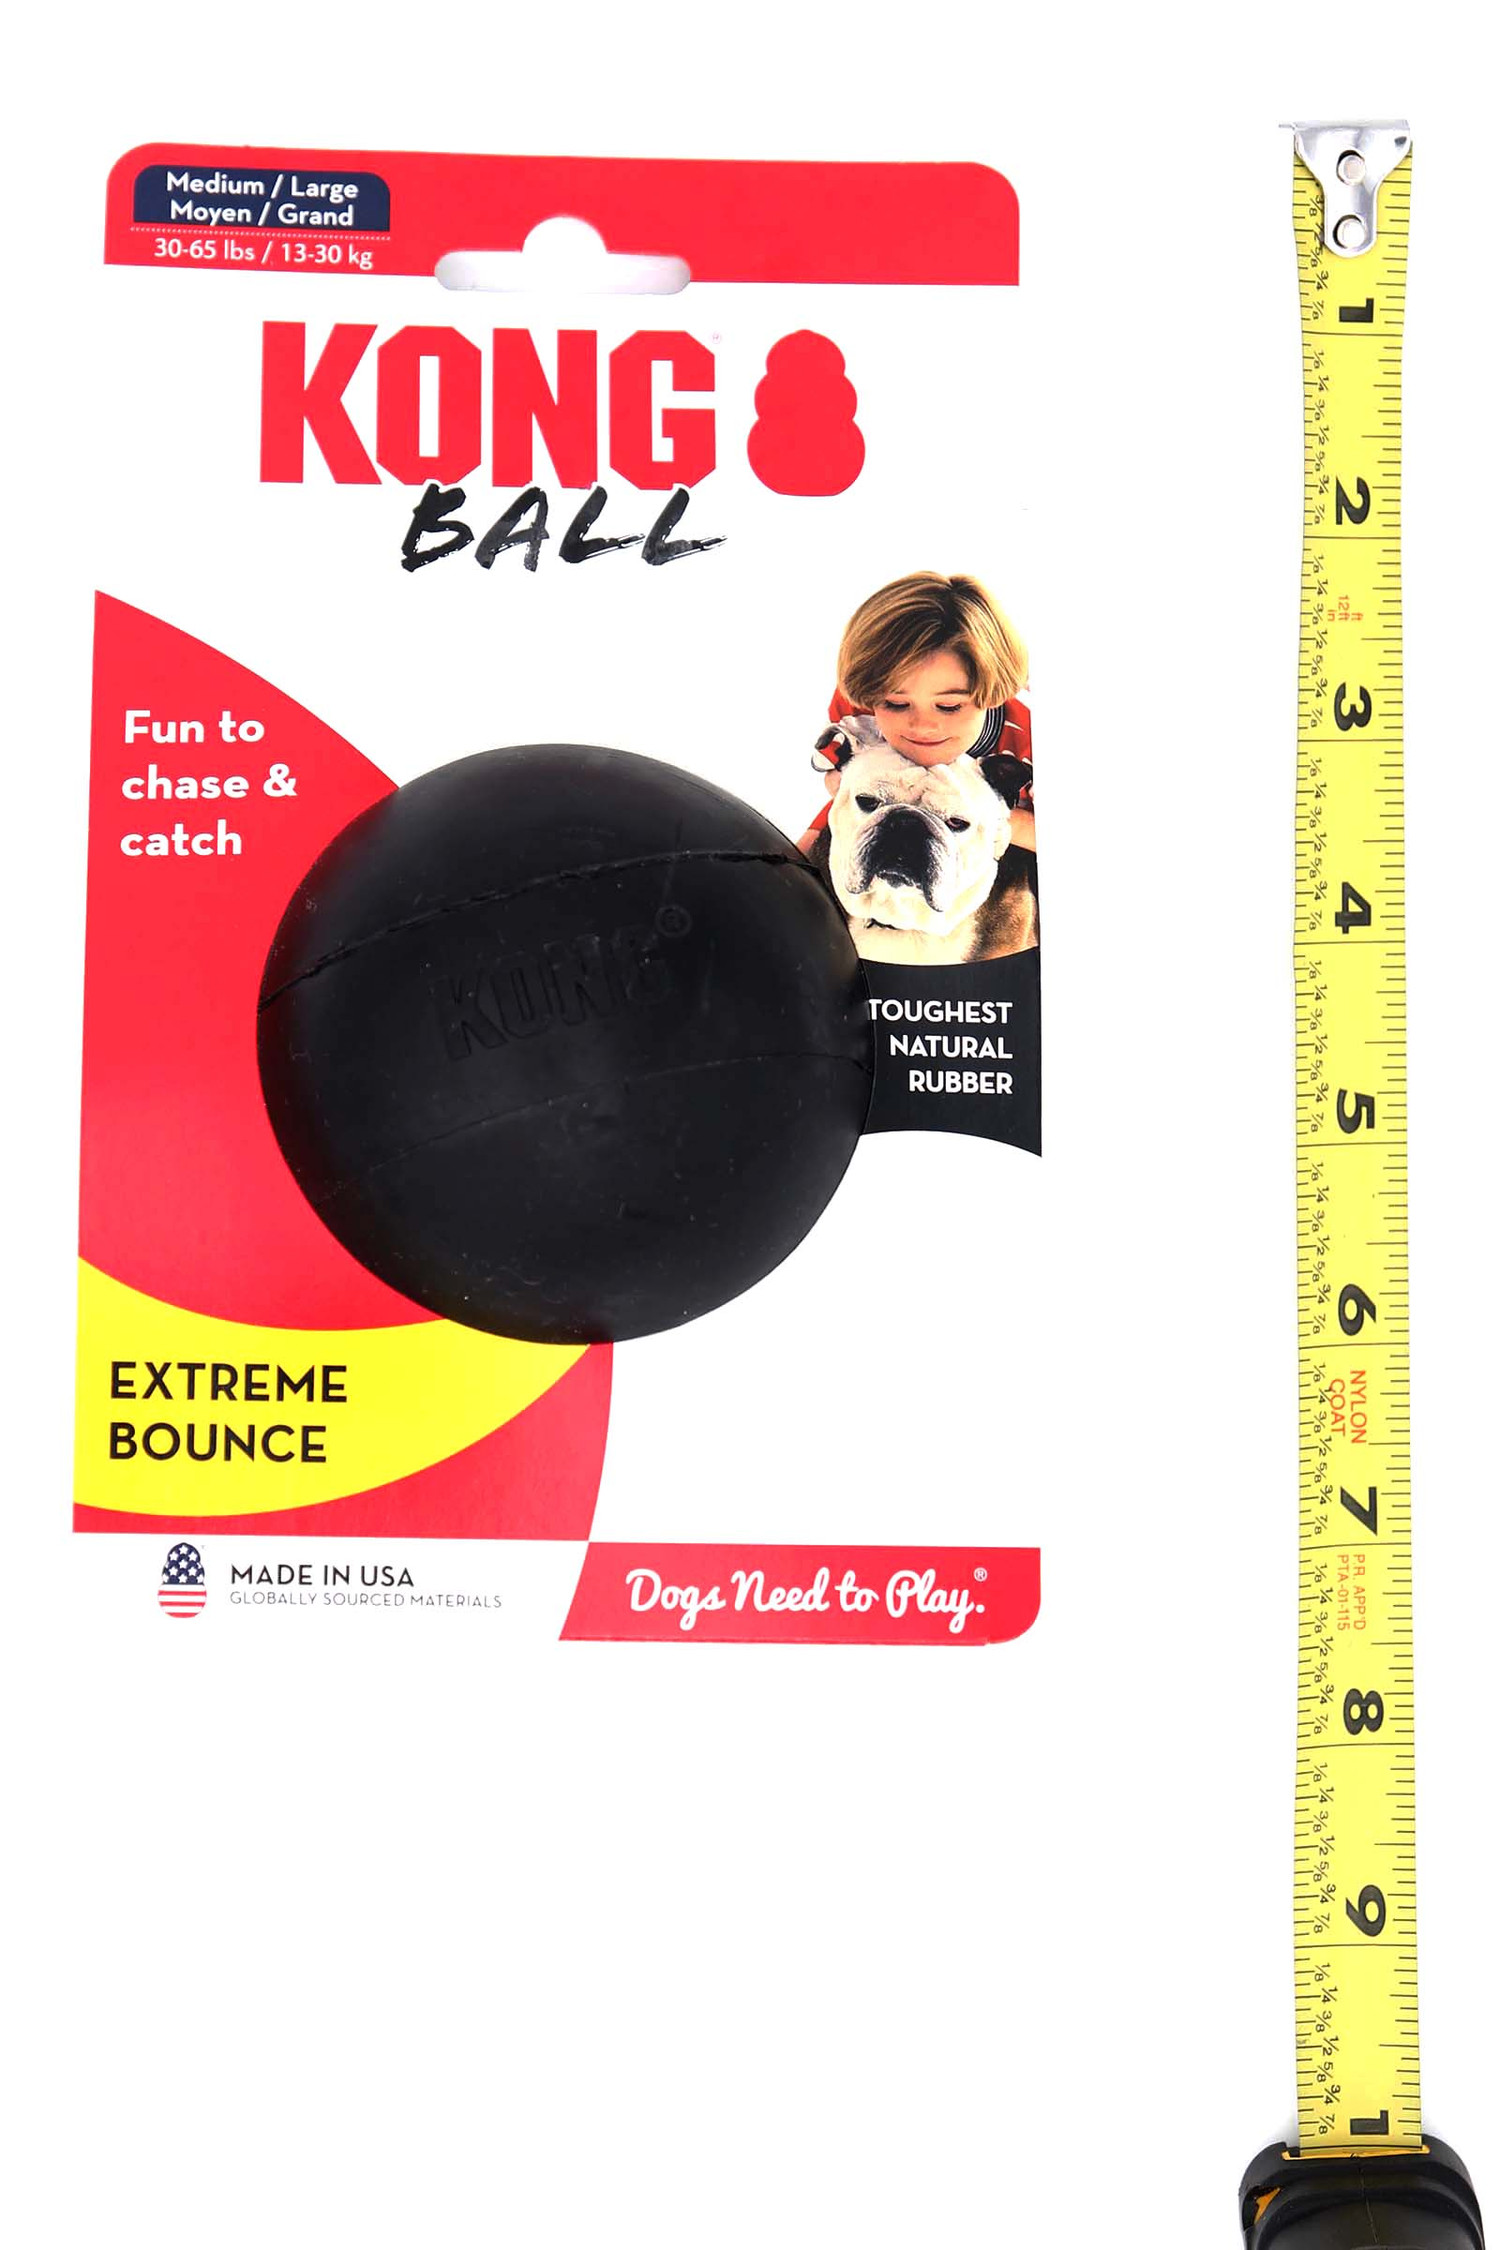 KONG Extreme Black Bounce Ball Dog Toy - Medium Large